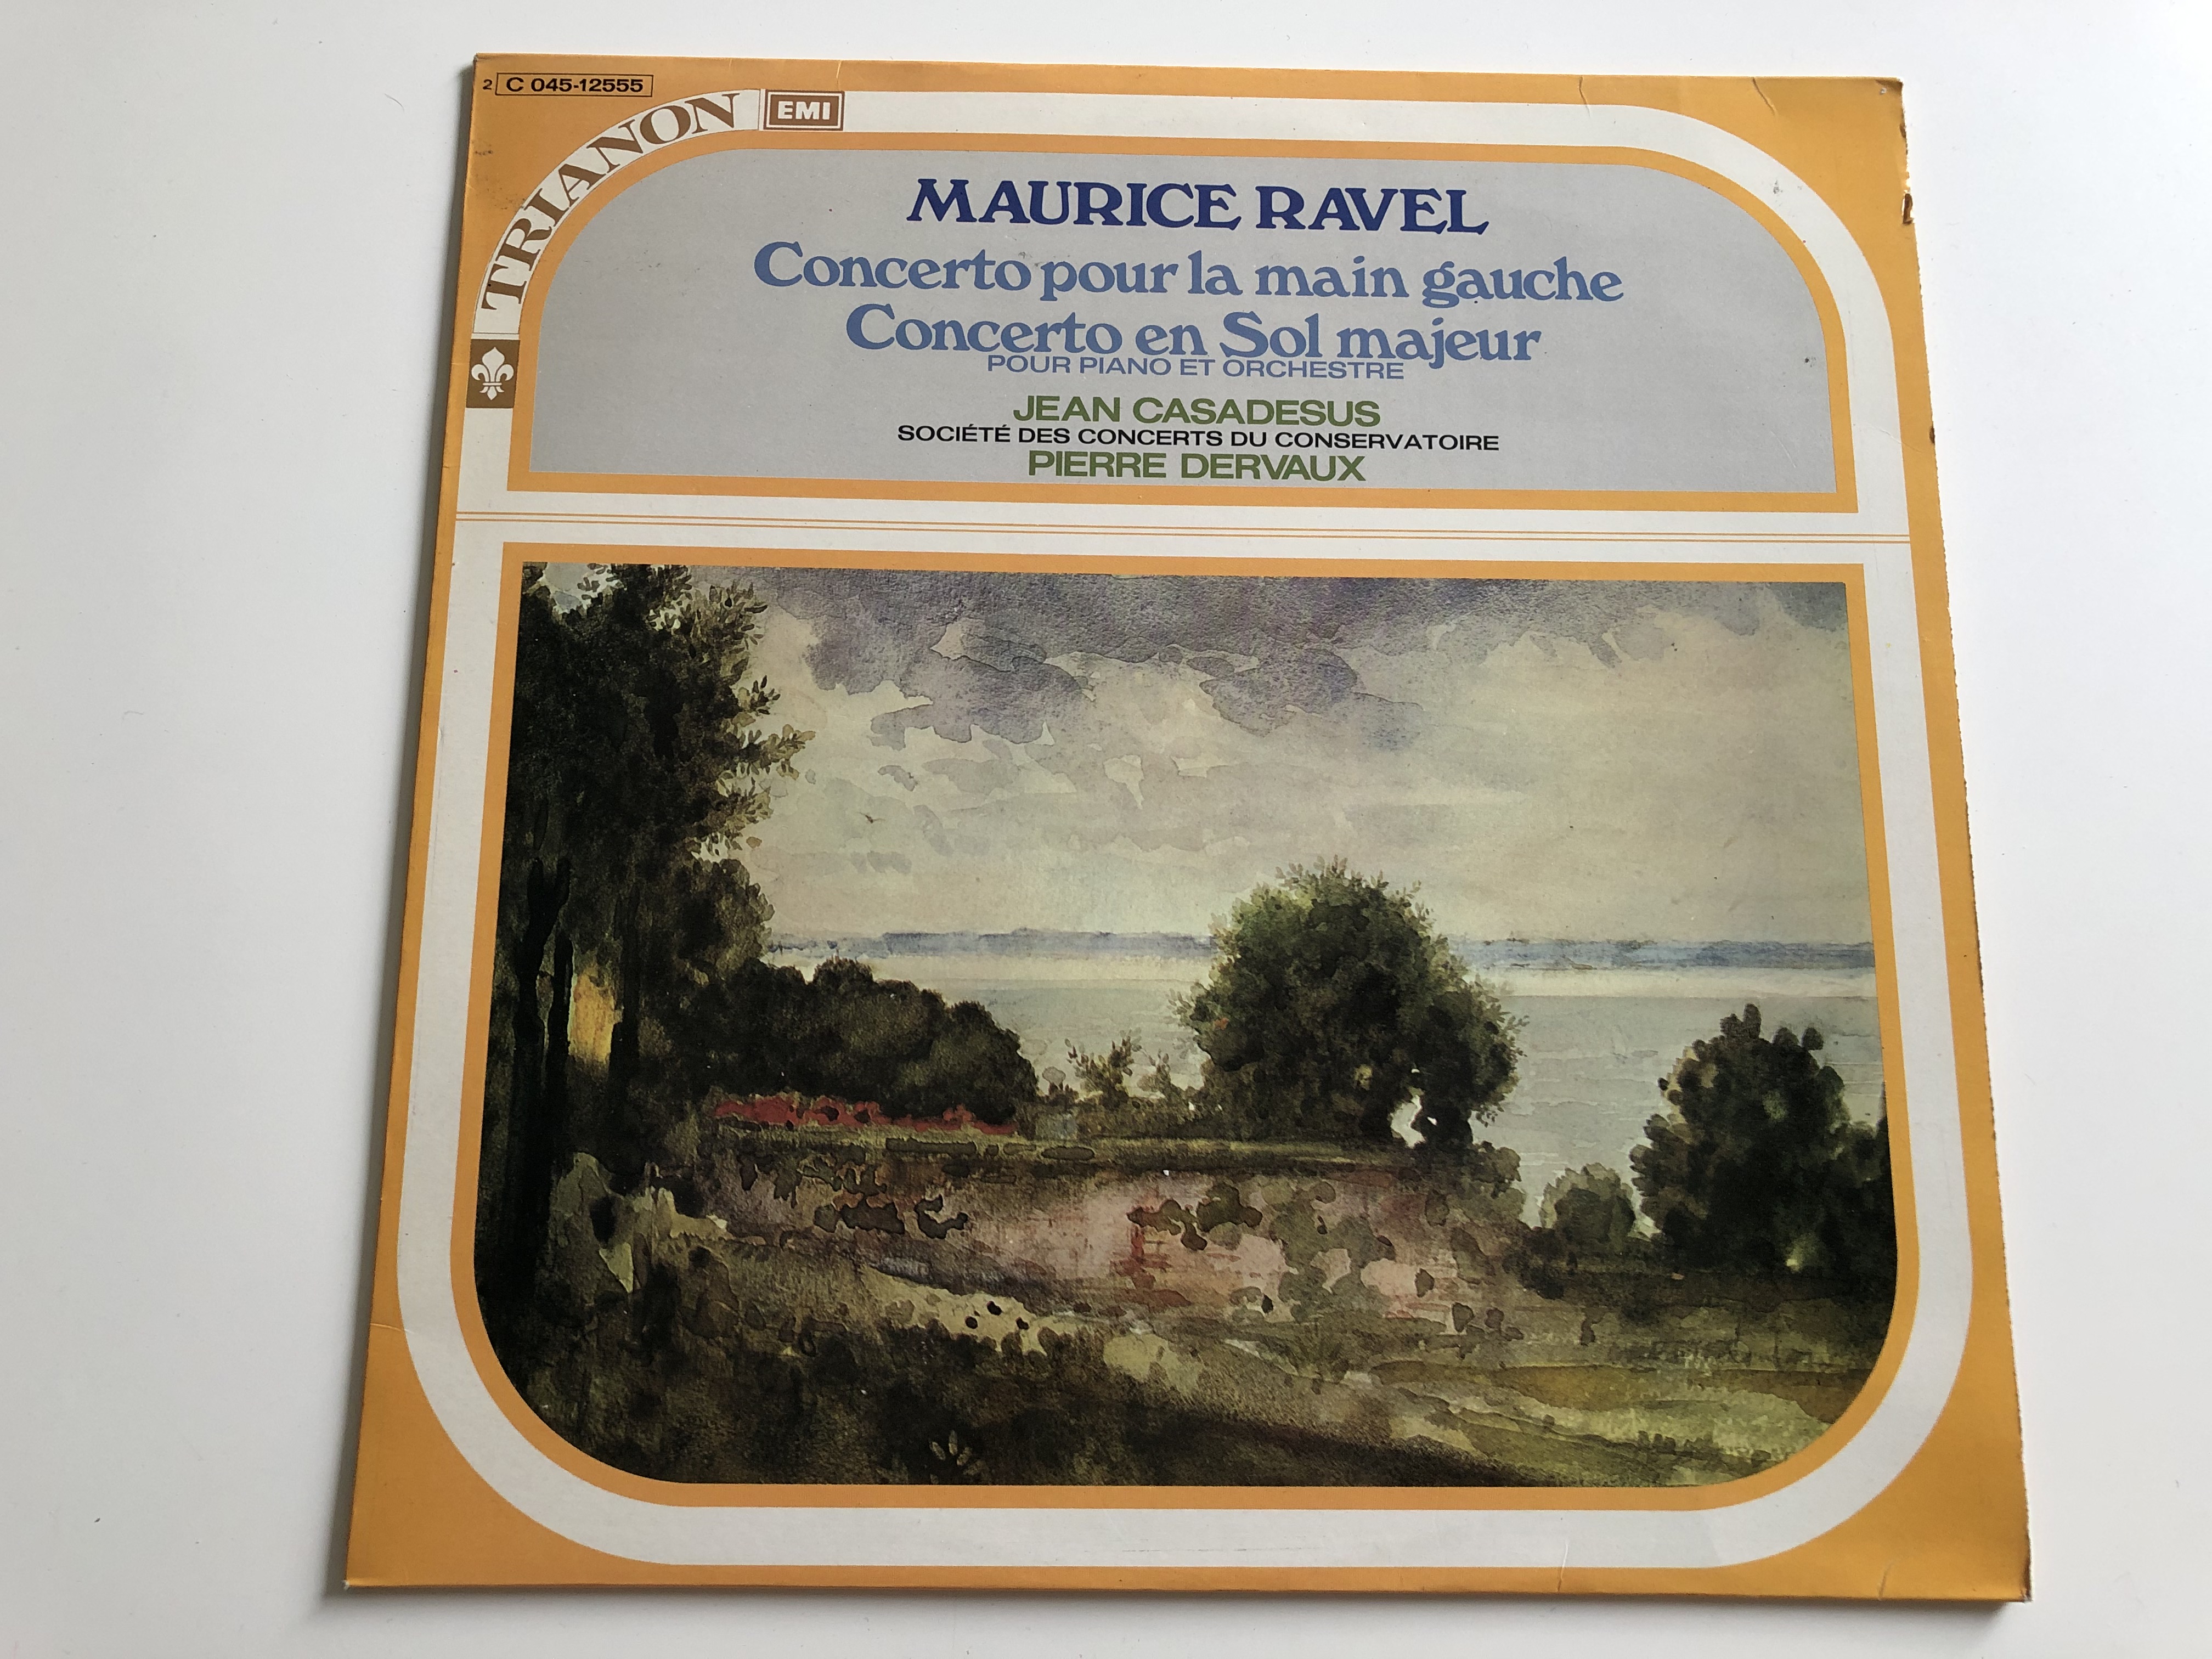 maurice-ravel-concerto-pour-la-main-gauche-concerto-en-sol-majeur-jean-casadeus-pierre-dervaux-trianon-lp-c-045-12555-1-.jpg